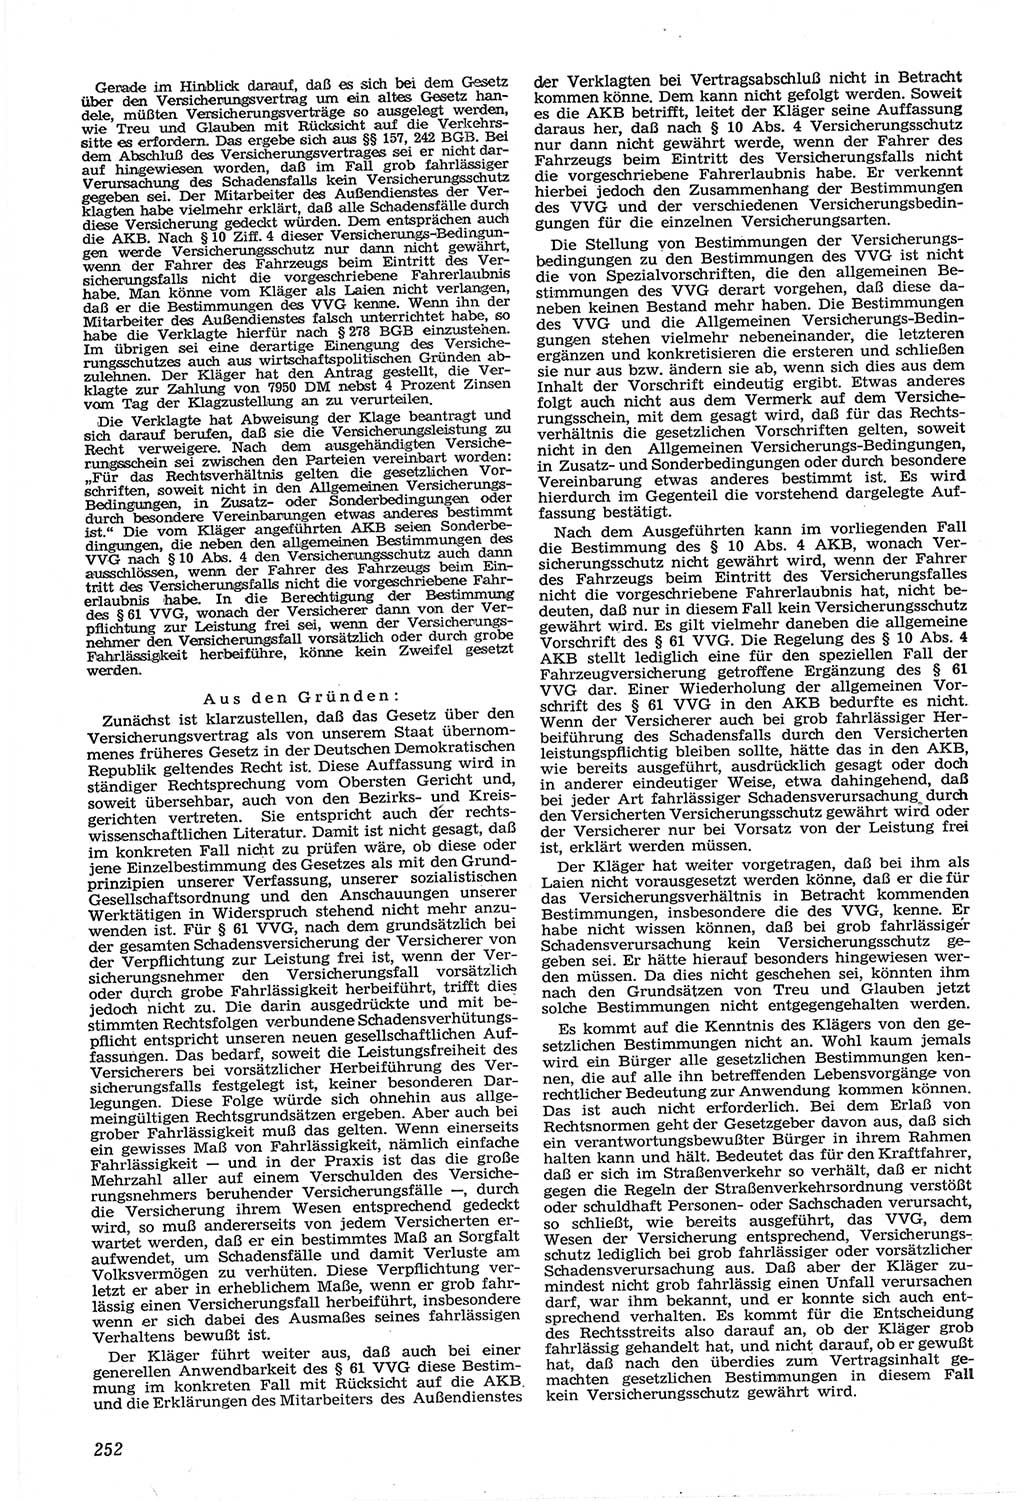 Neue Justiz (NJ), Zeitschrift für Recht und Rechtswissenschaft [Deutsche Demokratische Republik (DDR)], 14. Jahrgang 1960, Seite 252 (NJ DDR 1960, S. 252)